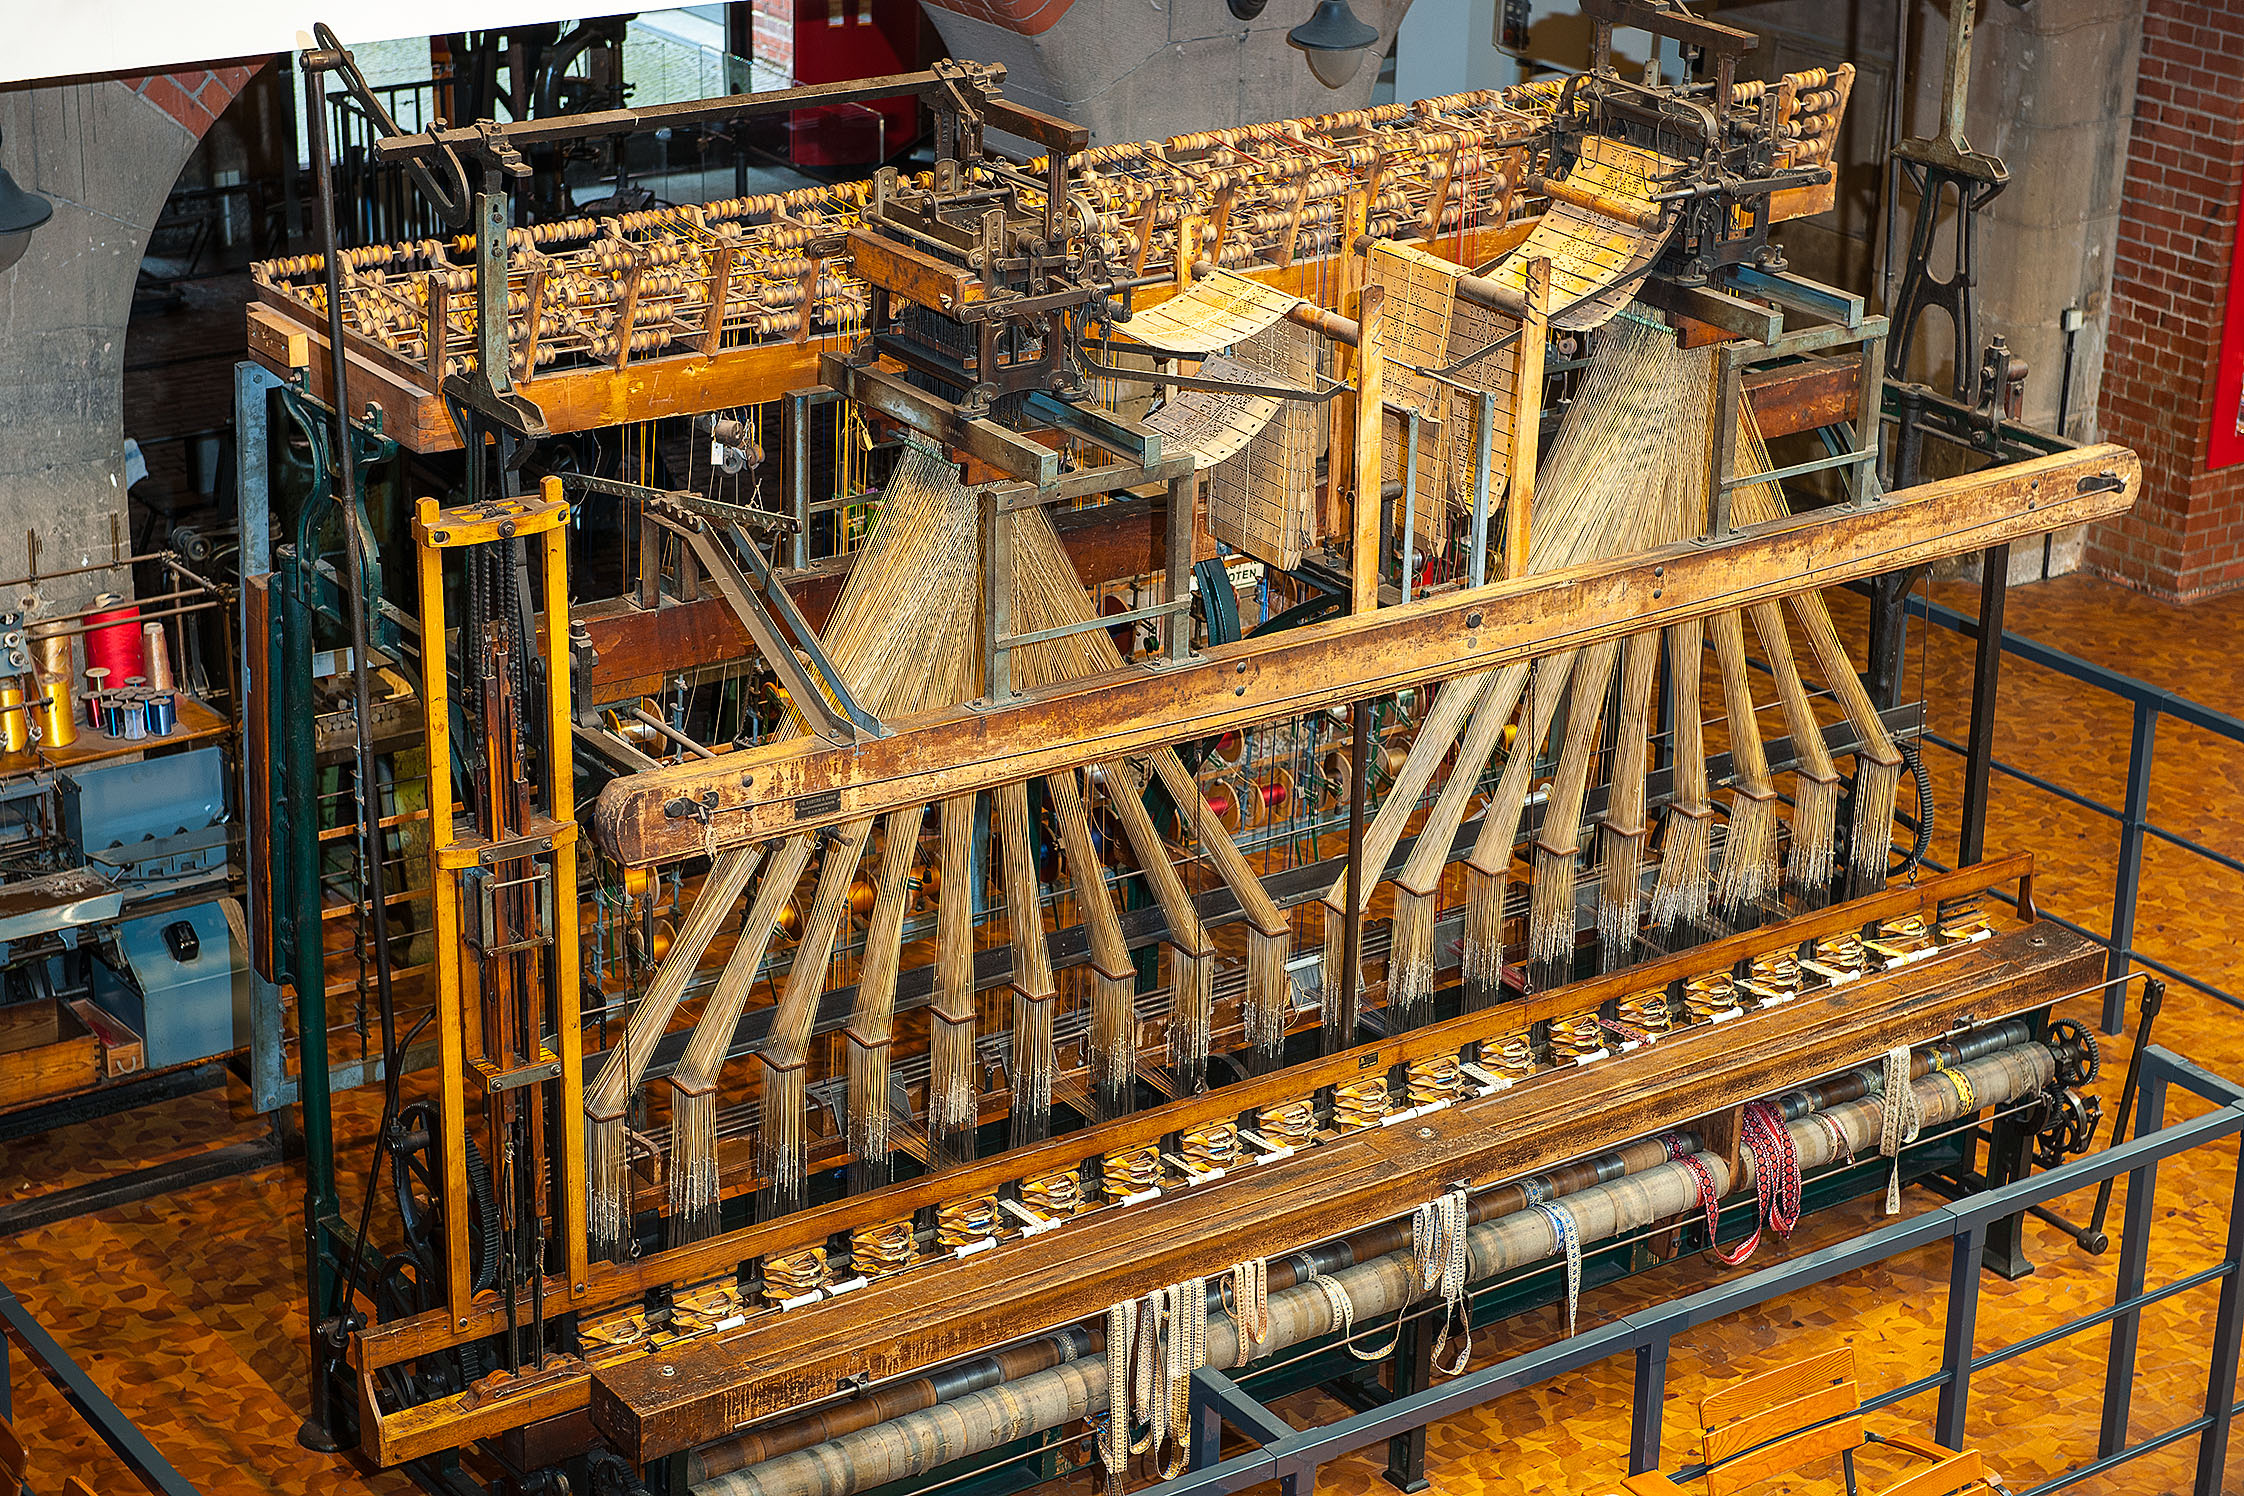 Ein großer, historischer Bandwebstuhl aus Holz und Metall. Auf der Oberseite des Webstuhls sind zwei Jacquardaufsätze mit Lochkarten zu erkennen, mit denen das Muster des späteren Stoffs vorgegeben wird.